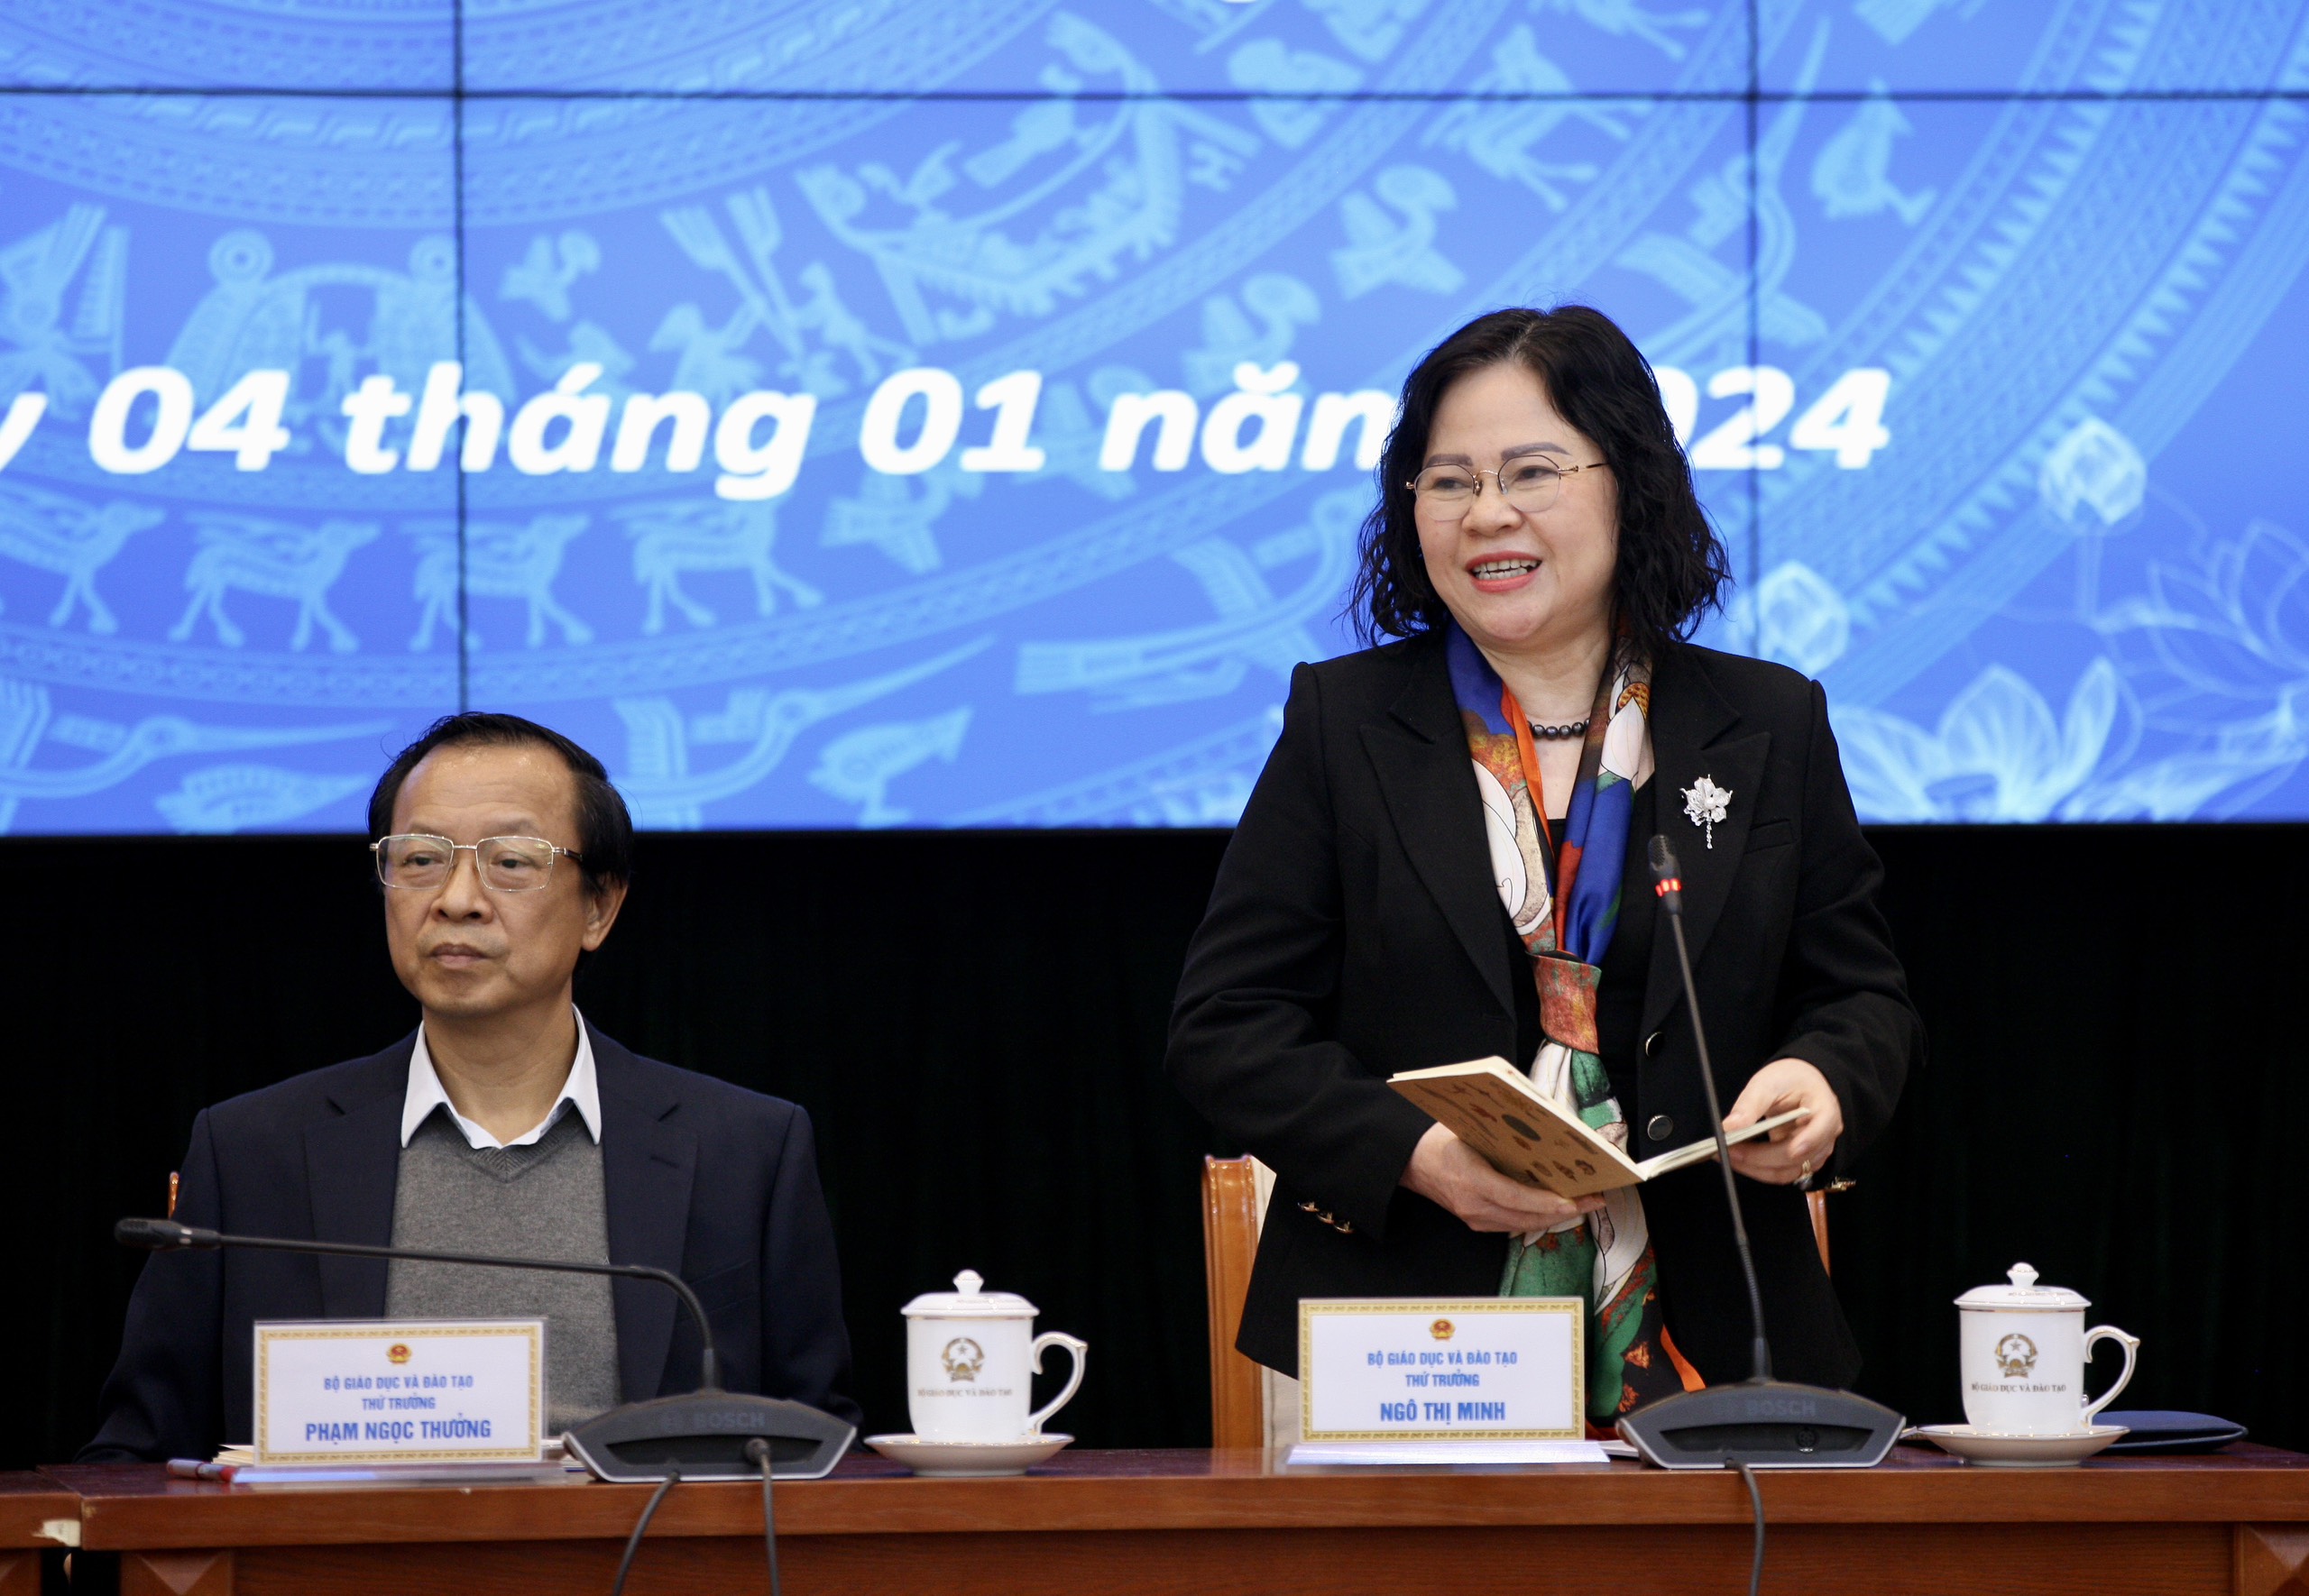 Thứ trưởng Ngô Thị Minh phát biểu tại Hội nghị.